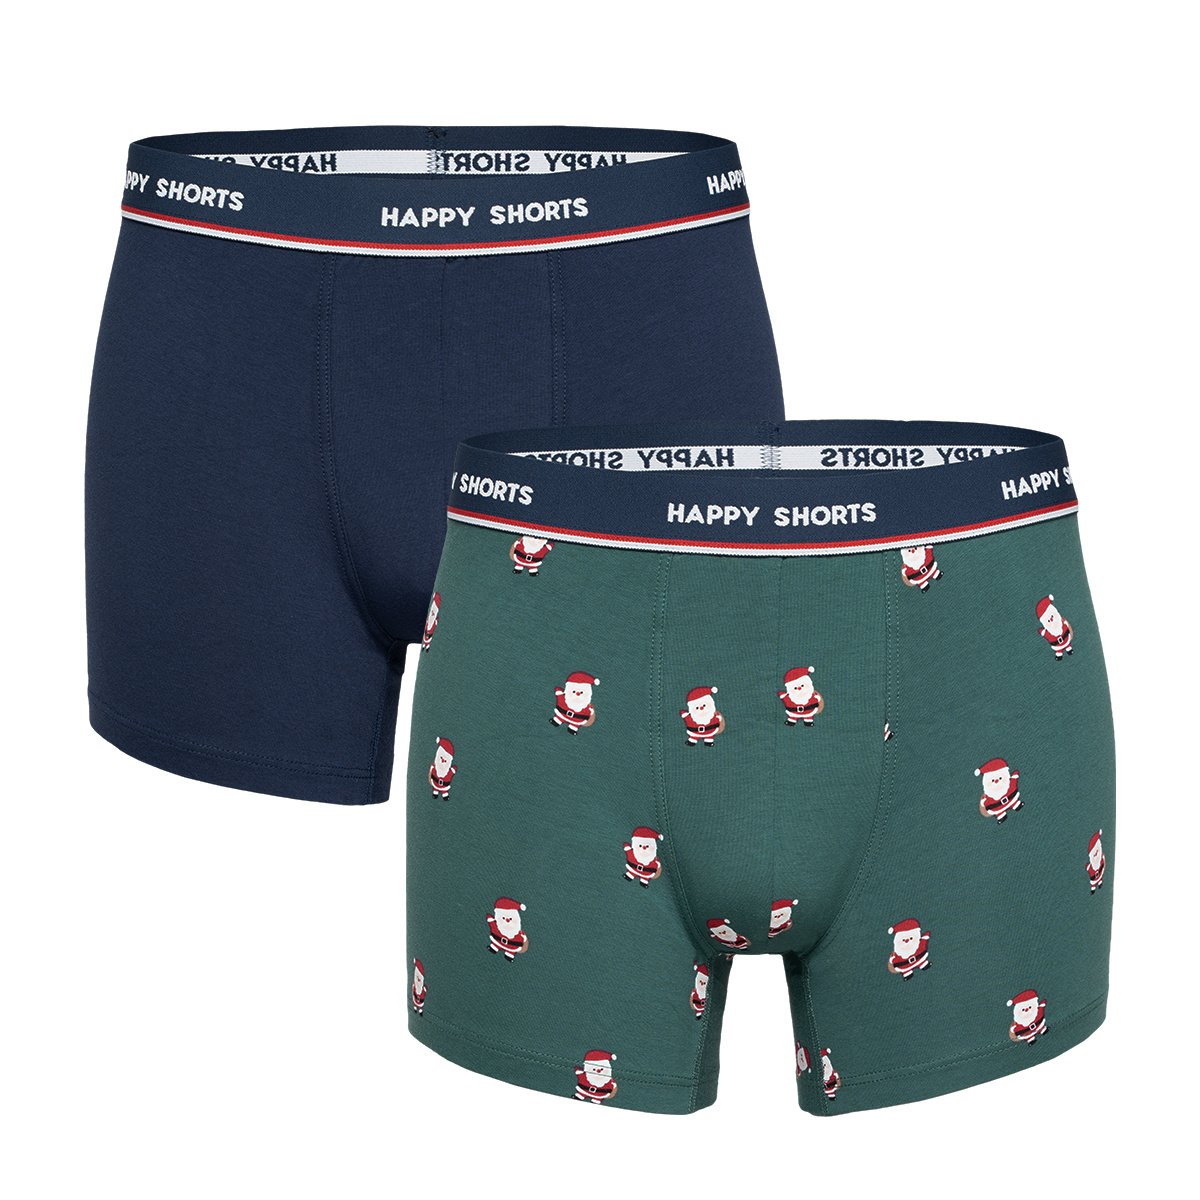 Afbeelding van Happy Shorts 2-pack kerst boxershorts heren nutcracker